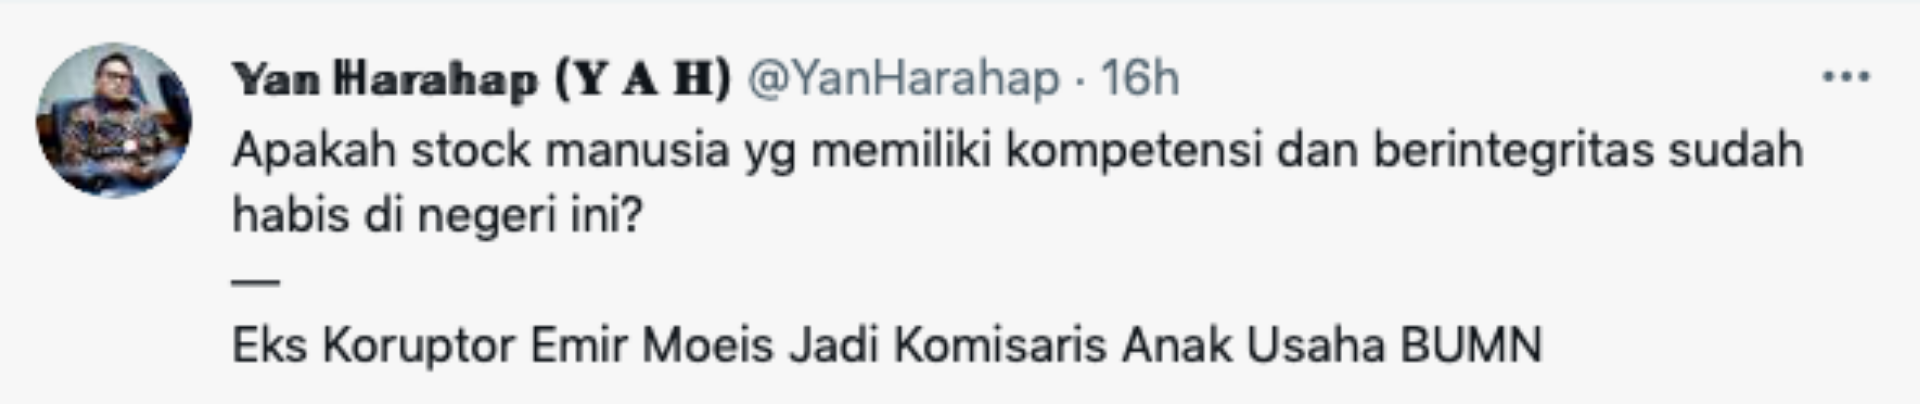 Yan Harahap mengomentari pengangkatan eks koruptor Emir Moeis menjadi komisari PT Pupuk Iskandar Muda.